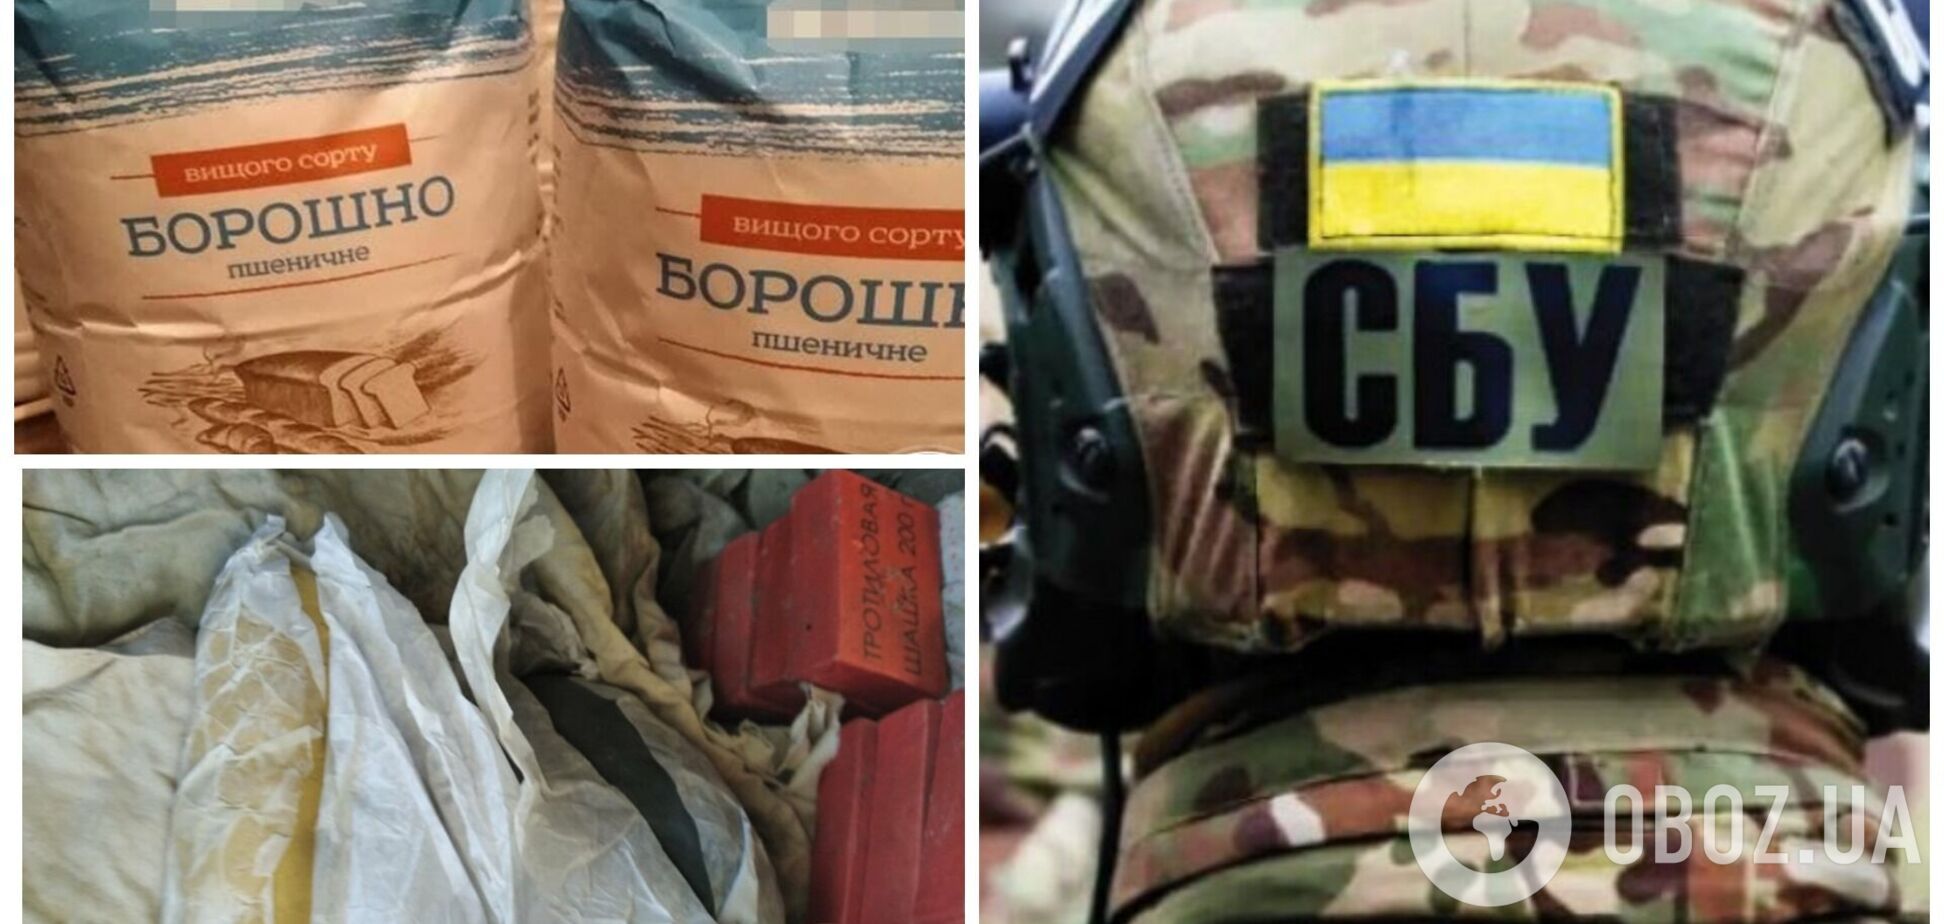 На Донбасі затримали посібницю бойовиків, яка ховала вибухівку у борошні. Фото